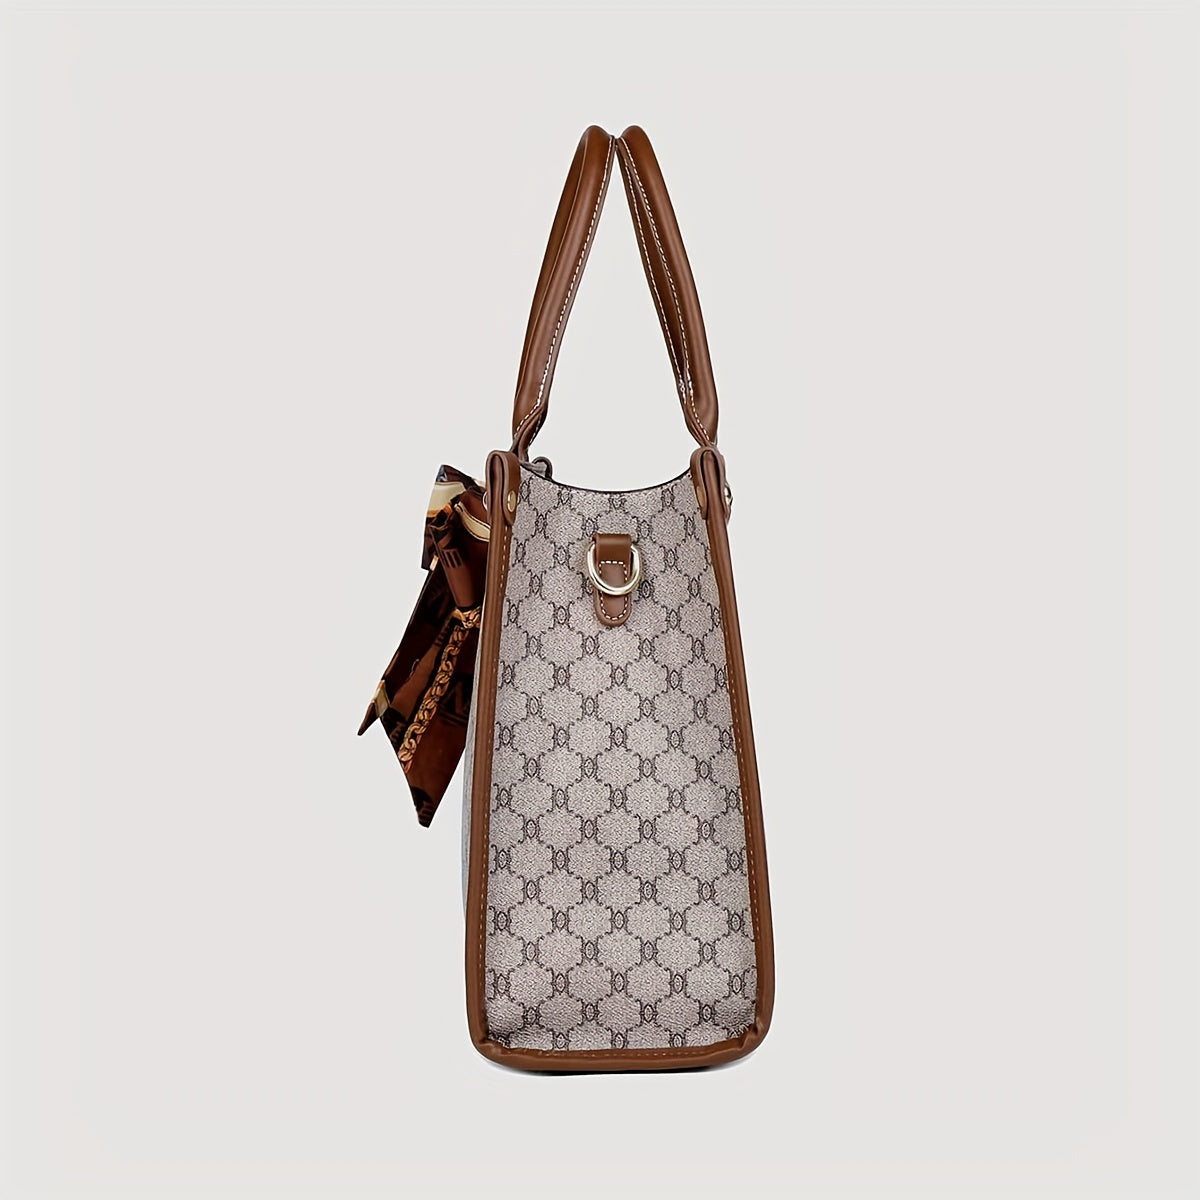 Klassische Quadratische Handtasche Im Farbblockdesign, Umhängetasche Mit Geometrischem Retro-Muster, Klassische Damen-Umhängetasche Aus PU-Leder